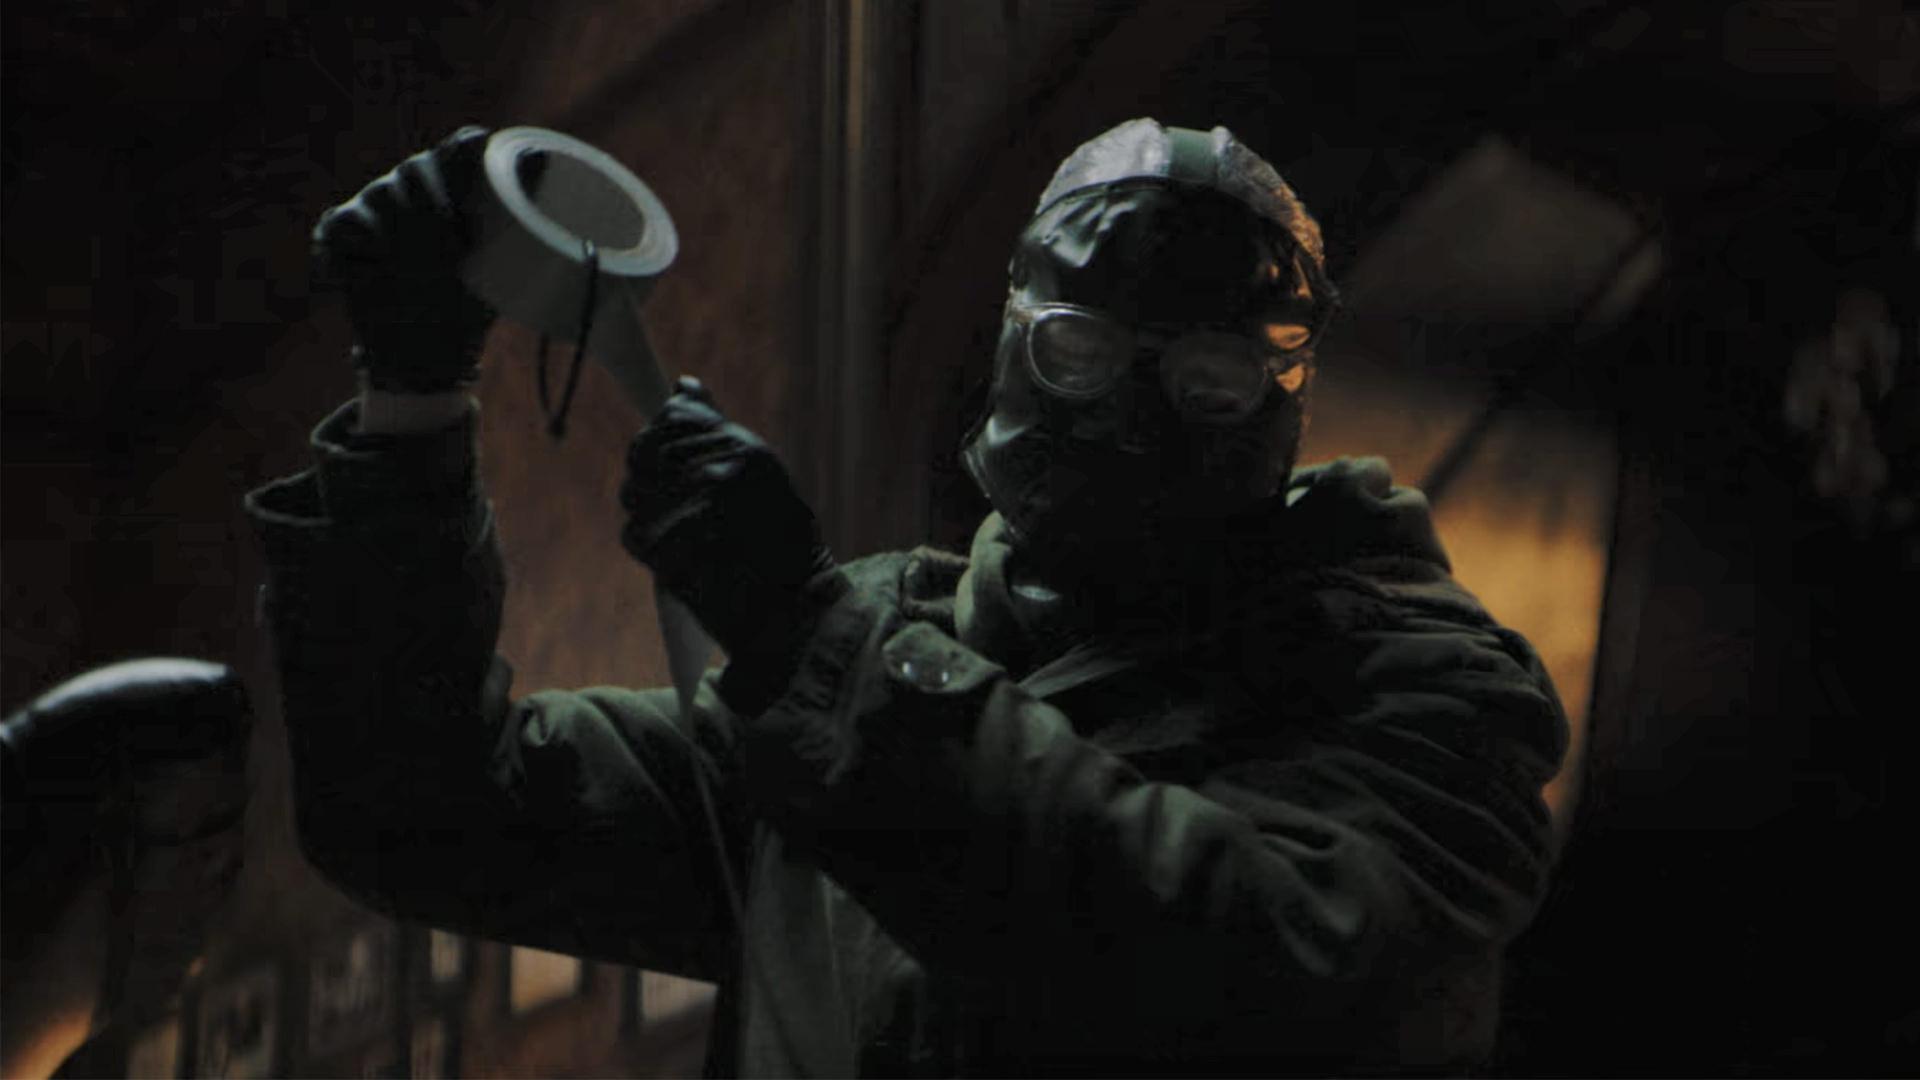 پل دینو در نقش ریدلر در حال باز کردن چسب در تریلر فیلم The Batman